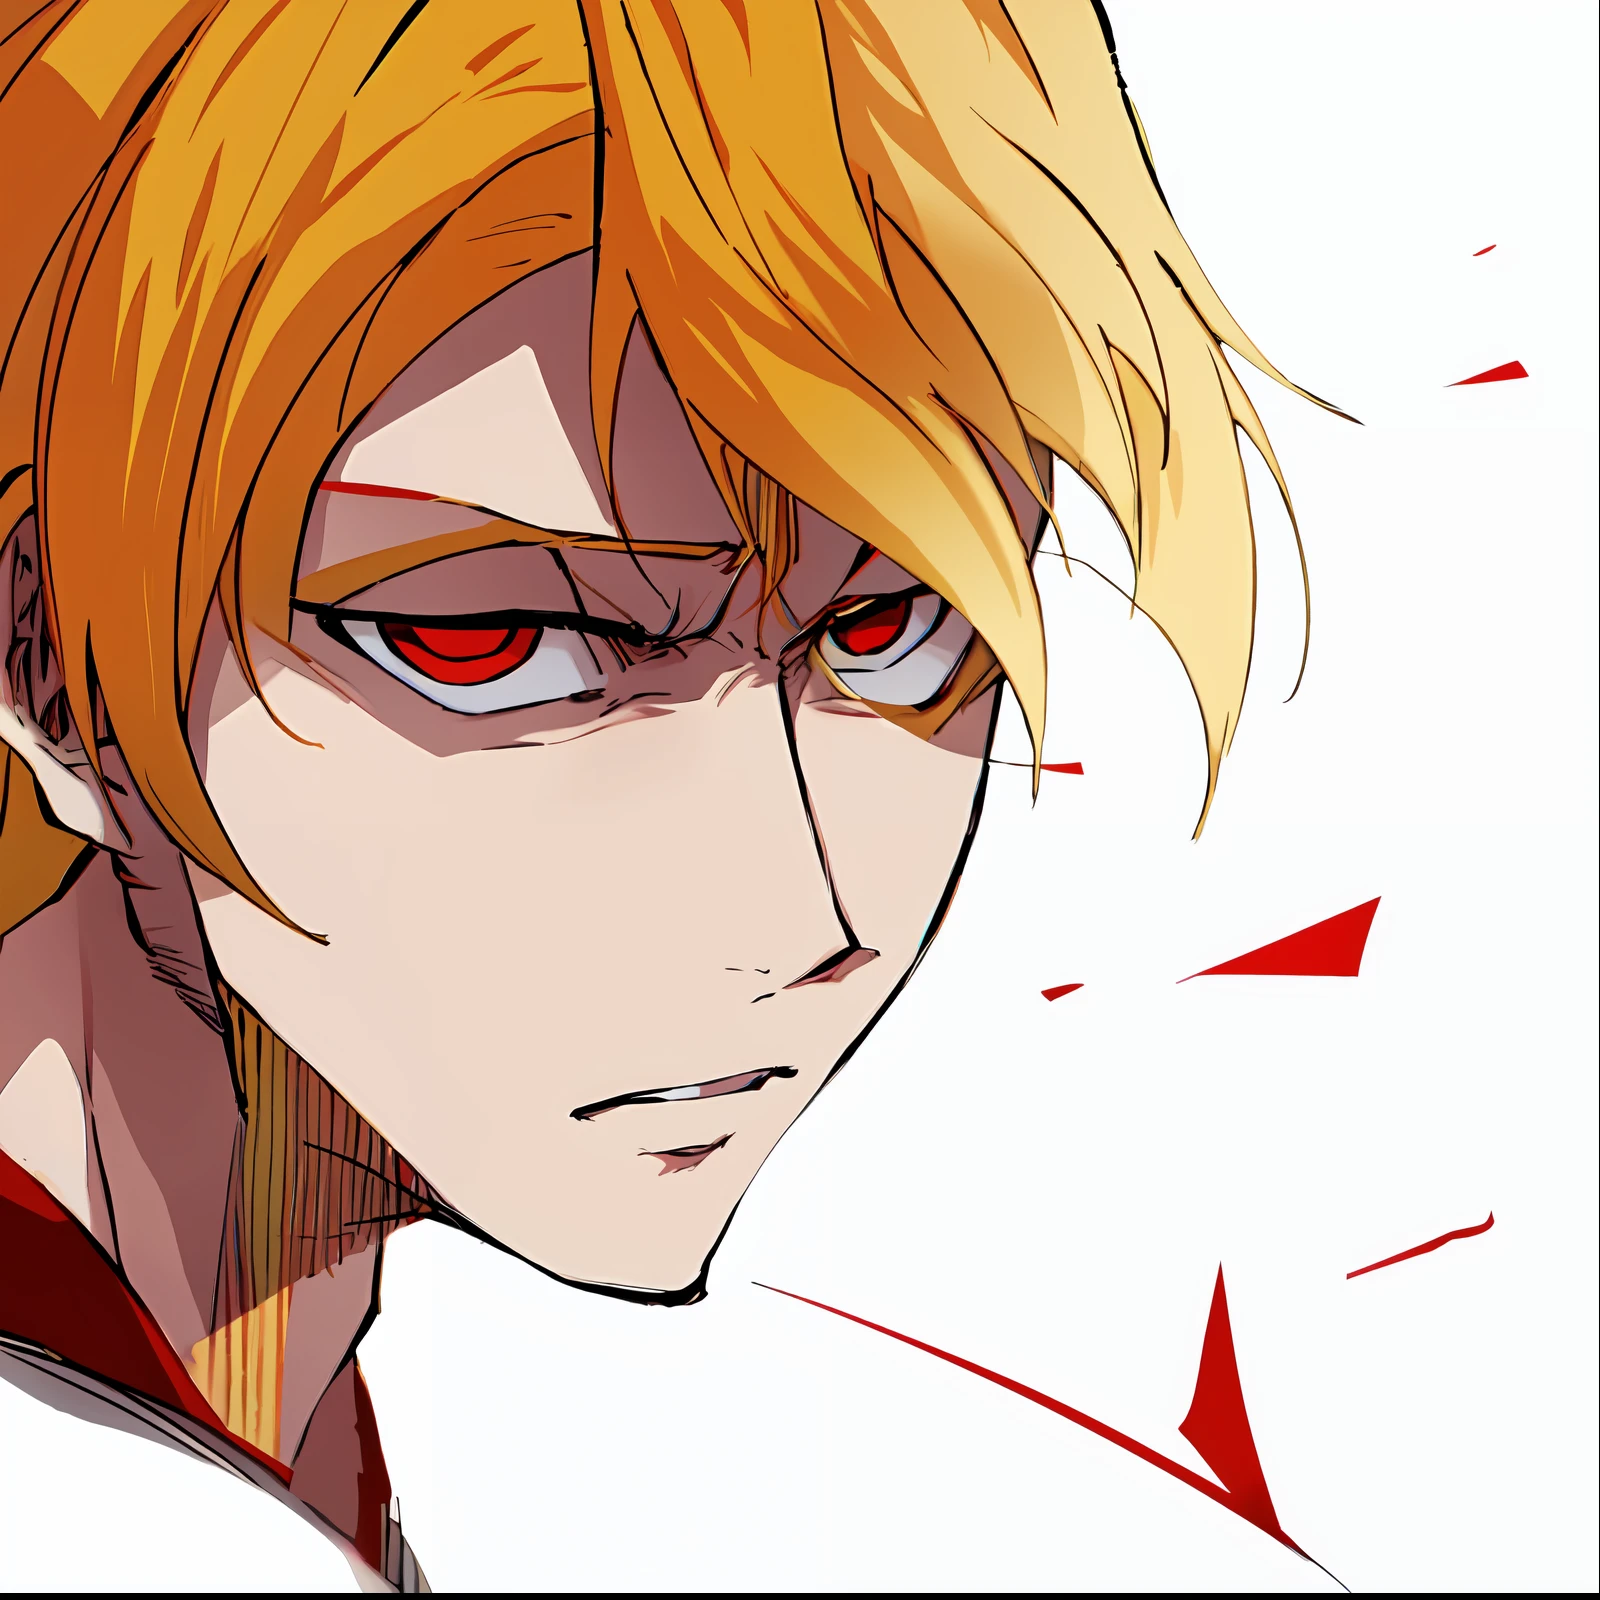 ein Anime von einem Mann mit blonden Haaren, rote Augen, Betrachter betrachten, wütend, verrückt, Farbmanga, Manga-Farbe, Farbmanga, Farbmanga panel, Einfacher Hintergrund, ein weißer Hintergrund